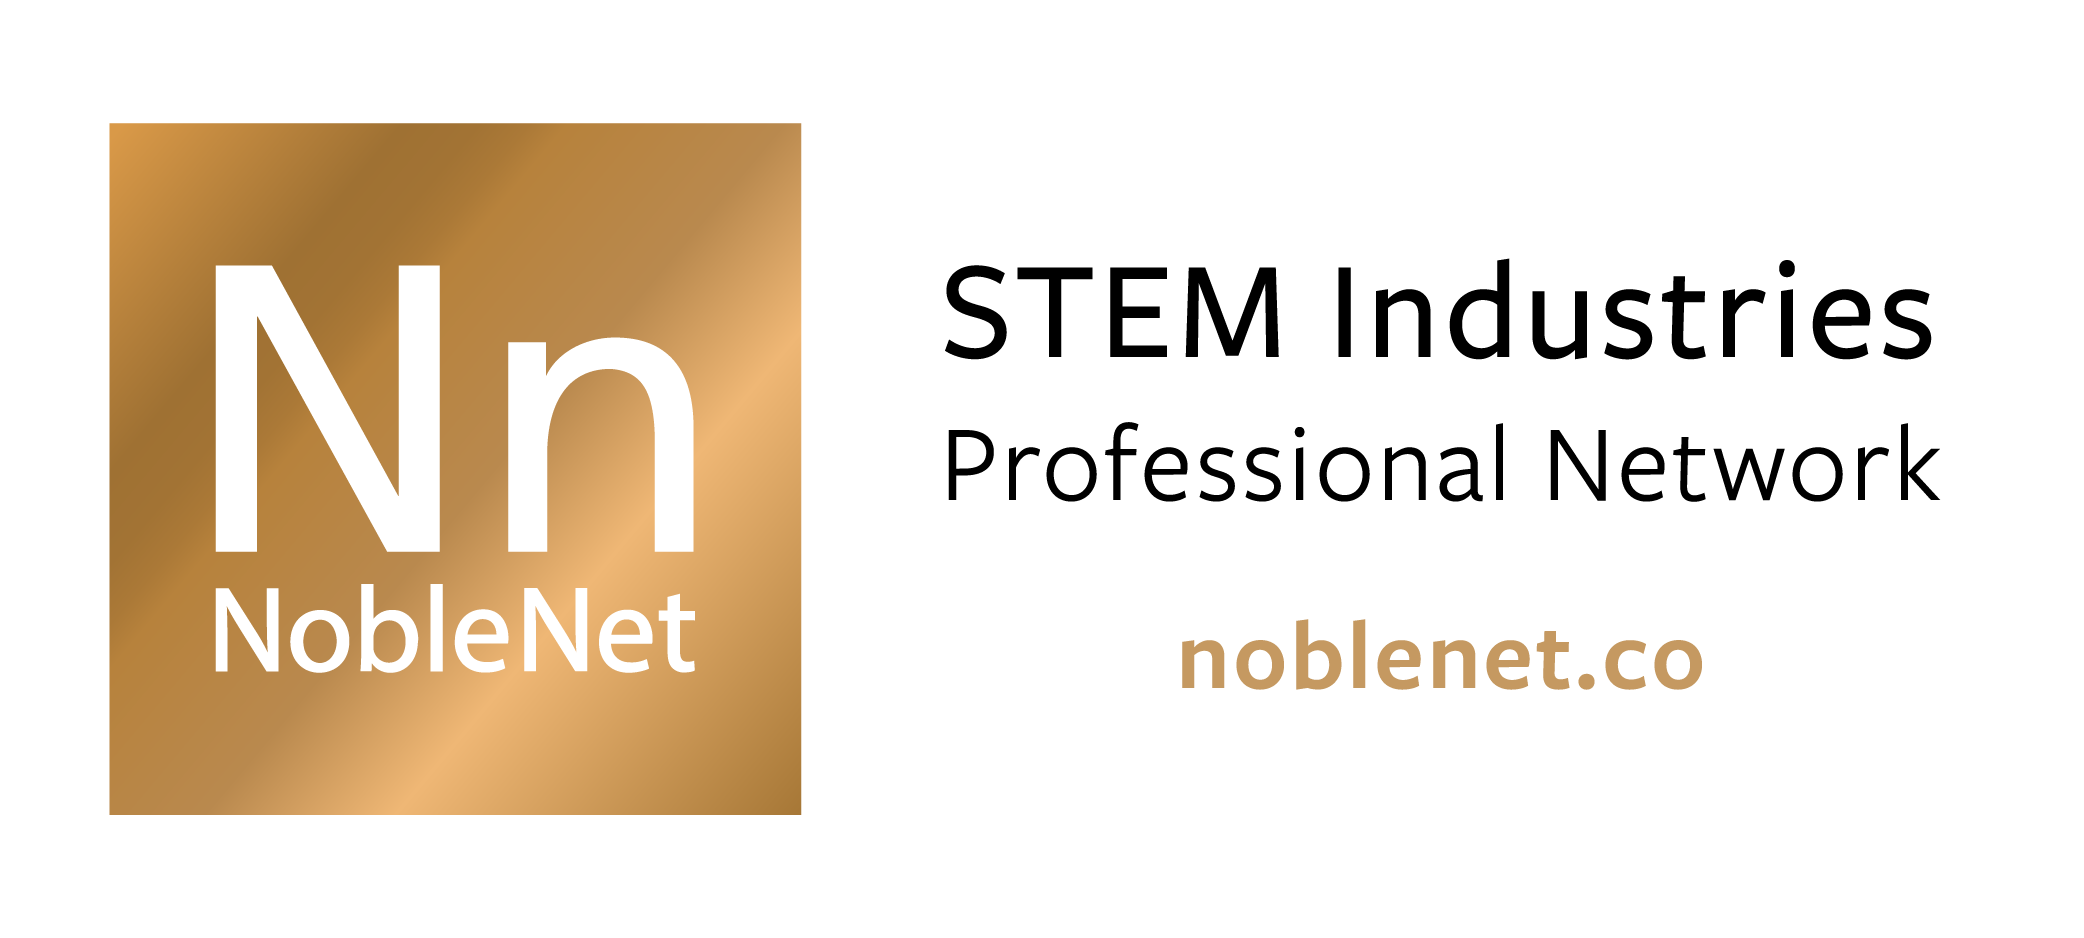 Noble Net